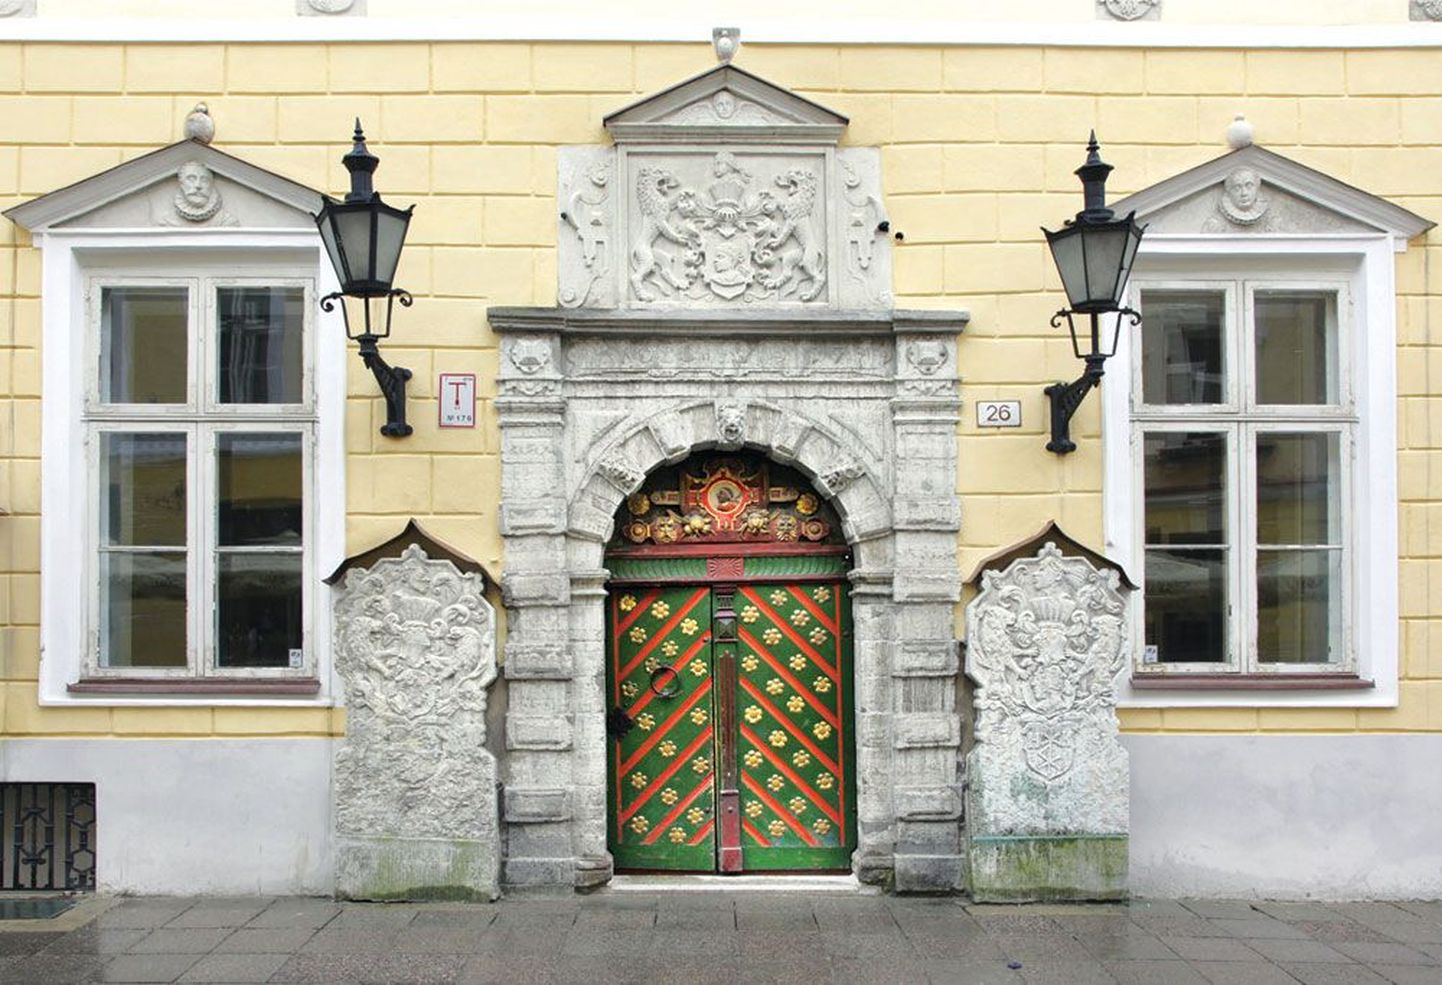 Tallinna vanalinnas Pikk tänav 26 asuv Mustpeade maja kuulus keskajal samanimelisele vennaskonnale, mis oli vallaliste kaupmeeste ja laevaomanike ühendus.